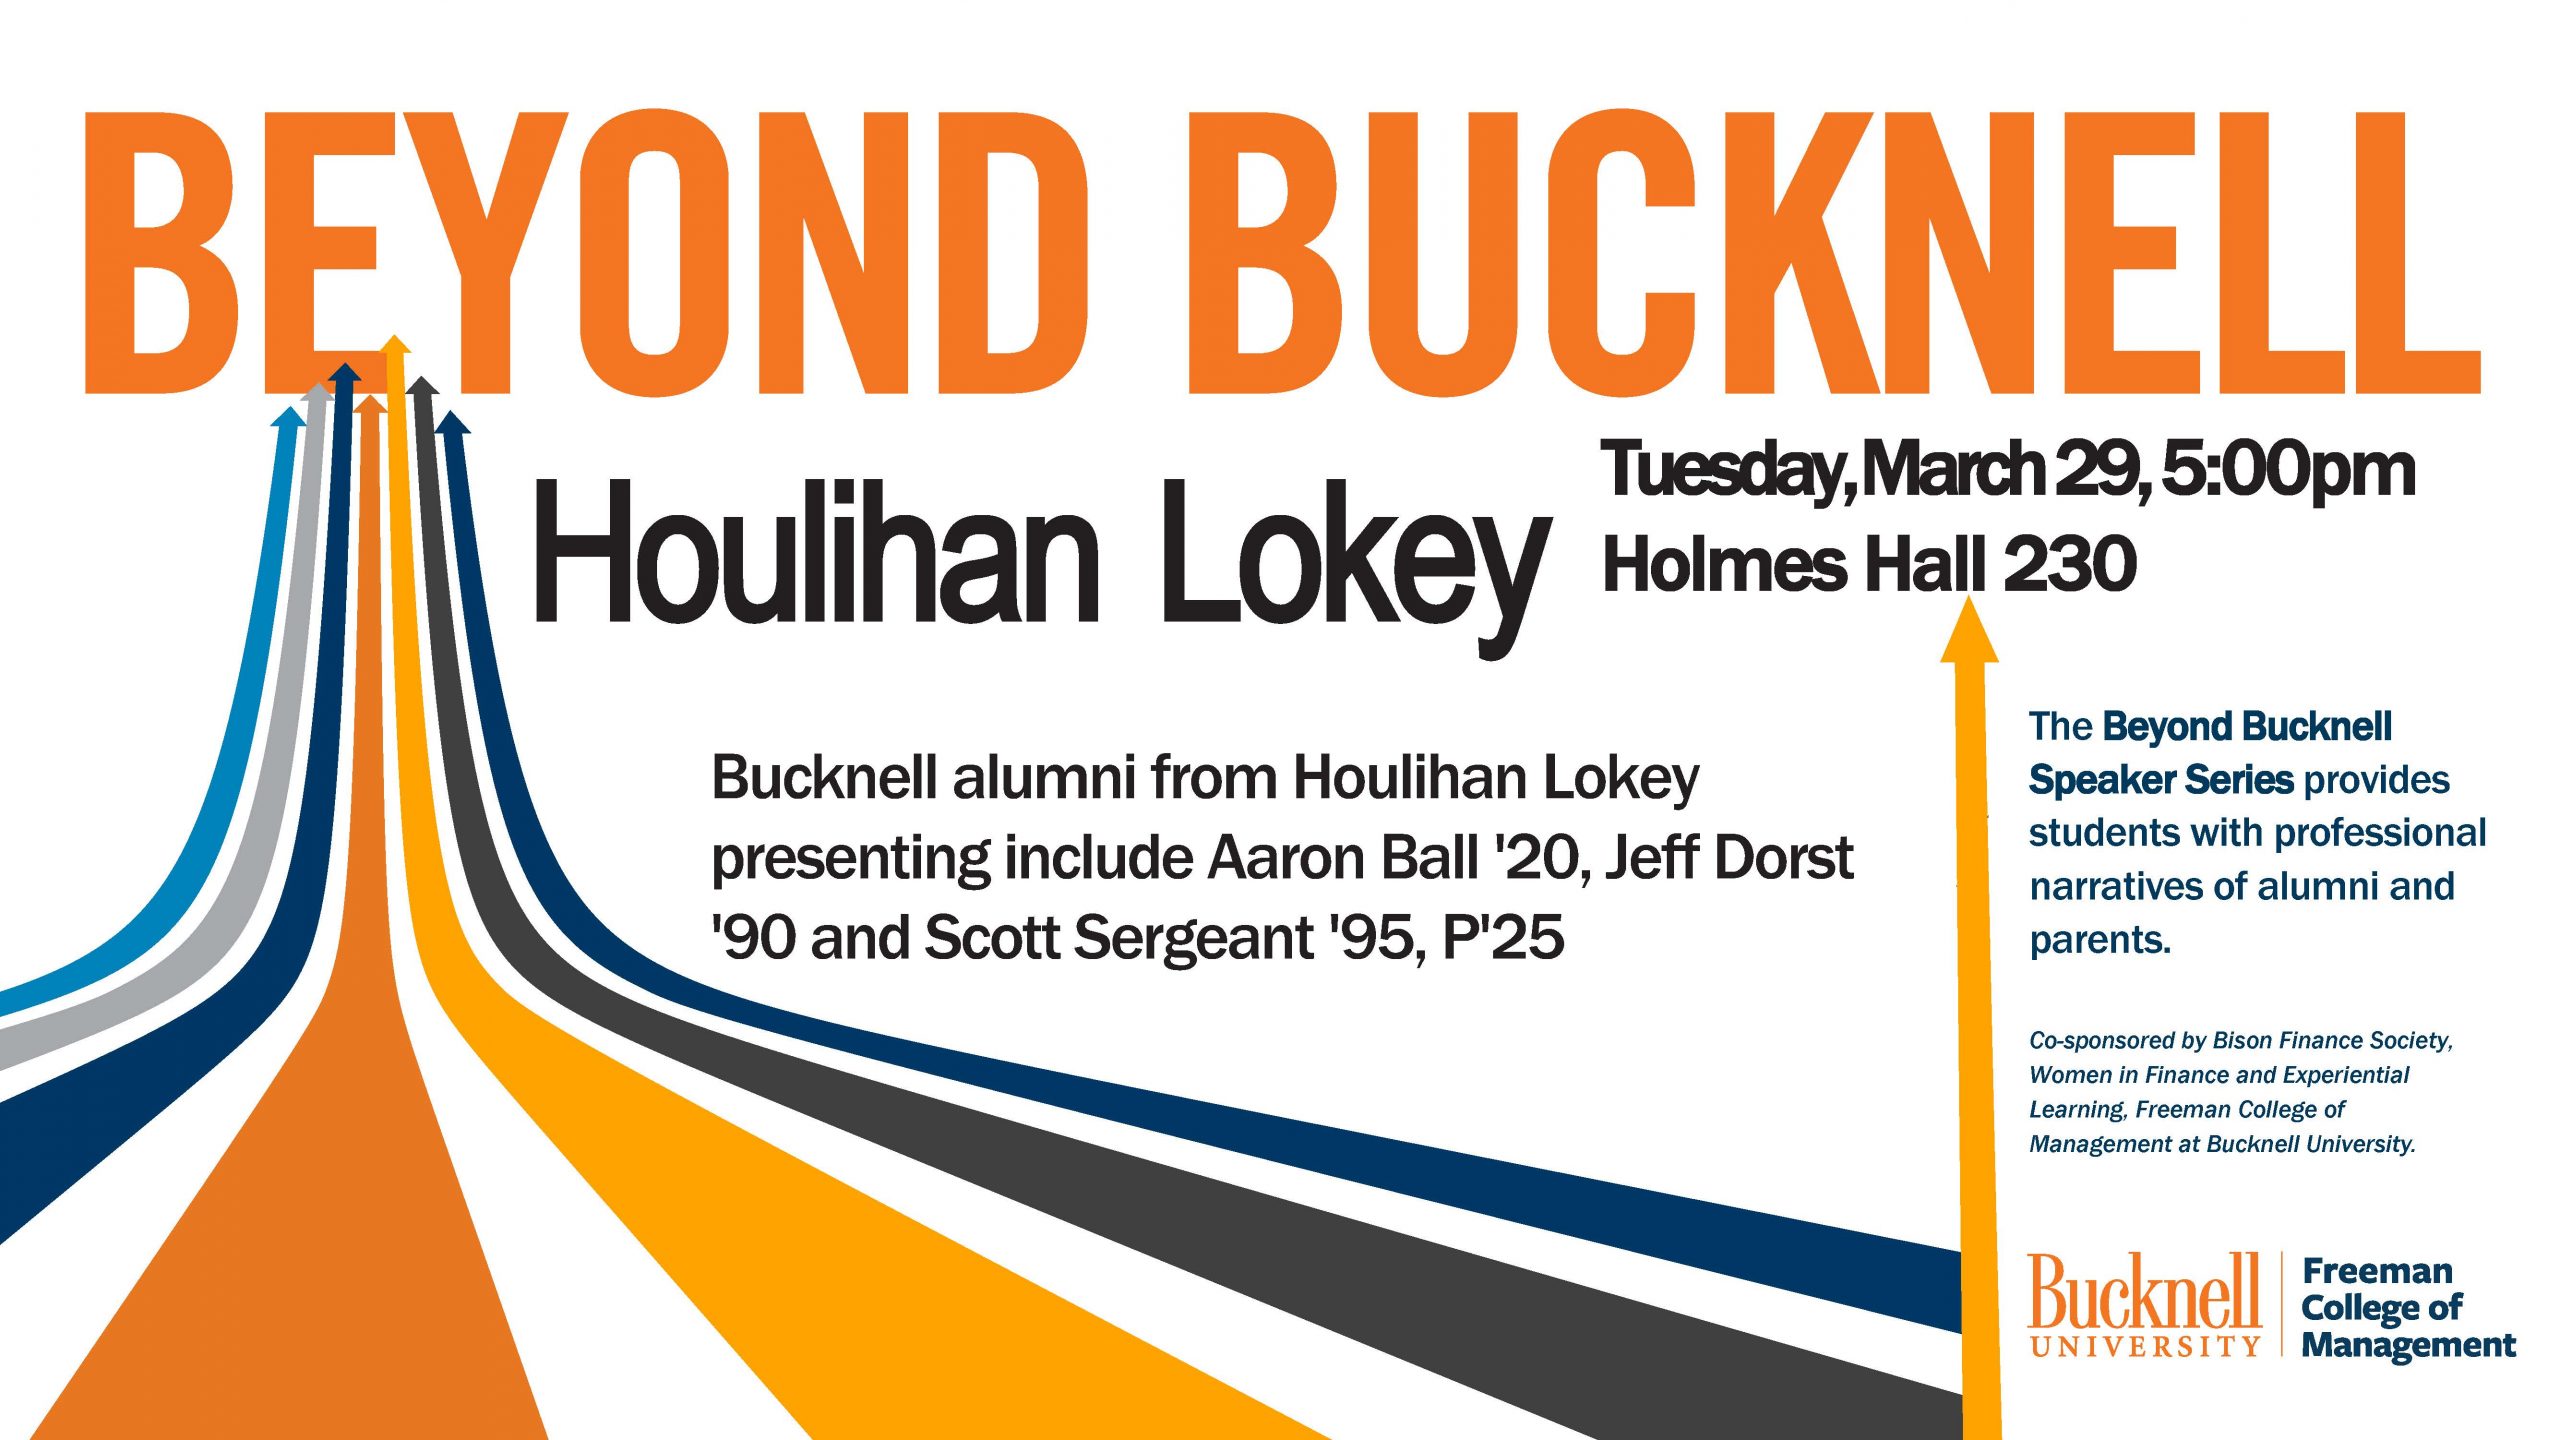 Beyond Bucknell Speaker Series presents Houlihan Lokey